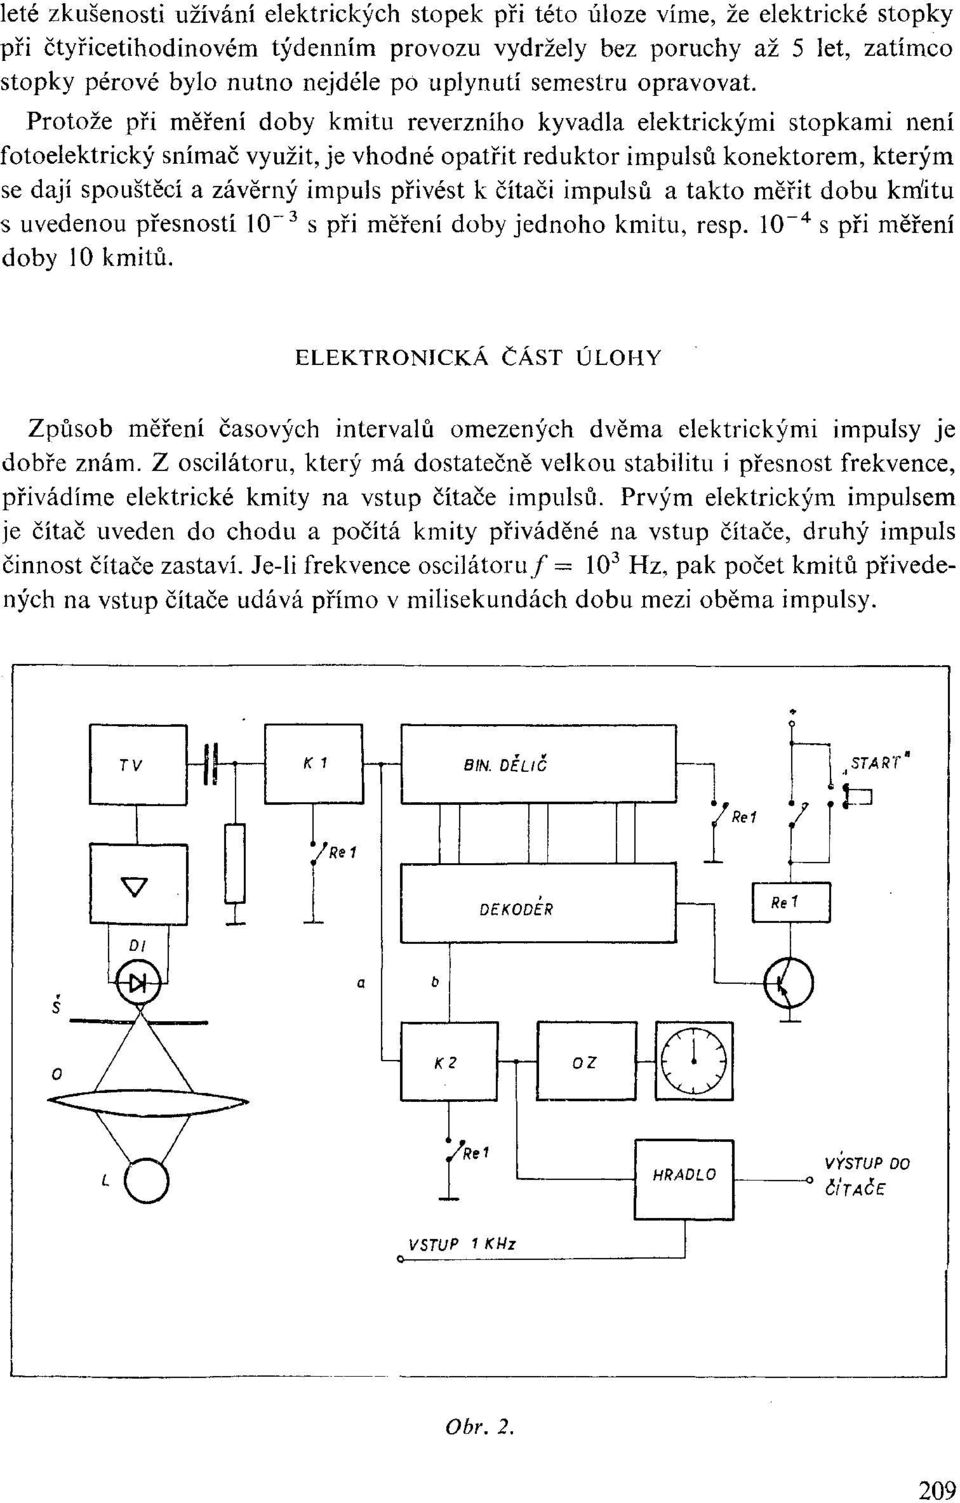 Protože při měření doby kmitu reverzního kyvadla elektrickými stopkami není fotoelektrický snímač využit, je vhodné opatřit reduktor impulsů konektorem, kterým se dají spouštěcí a závěrný impuls